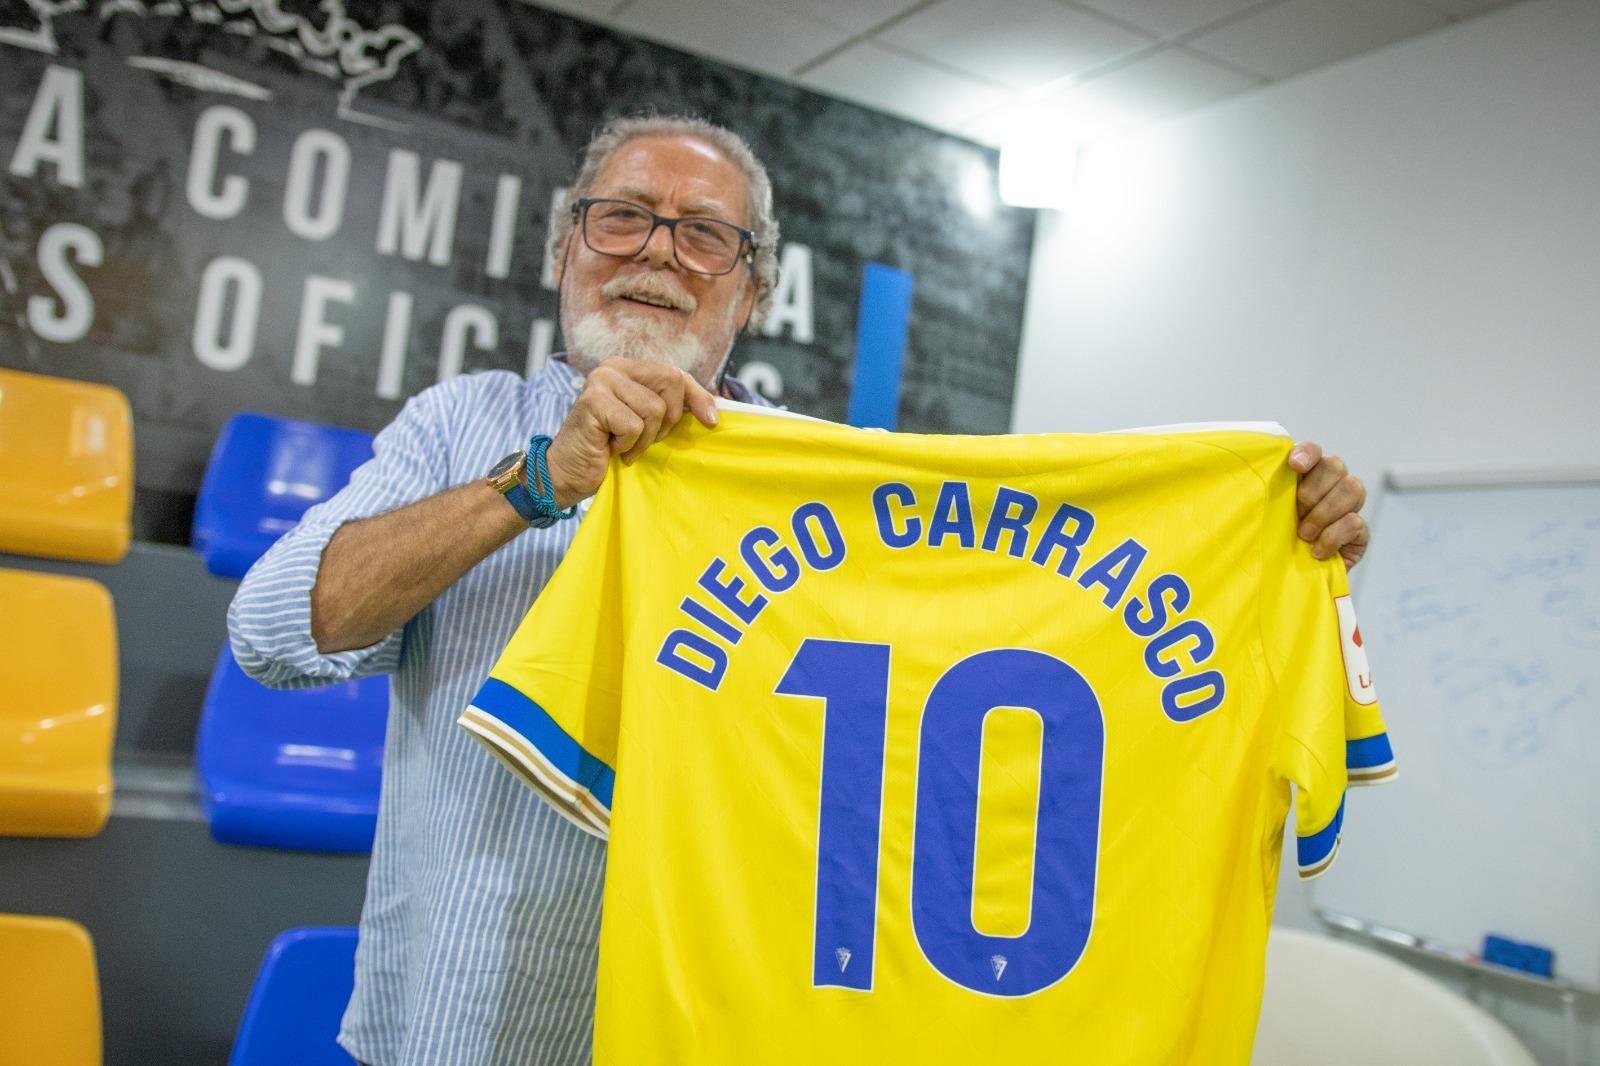 El cantaor jerezano Diego Carrasco expresa que "el Cádiz CF es lo mejor"